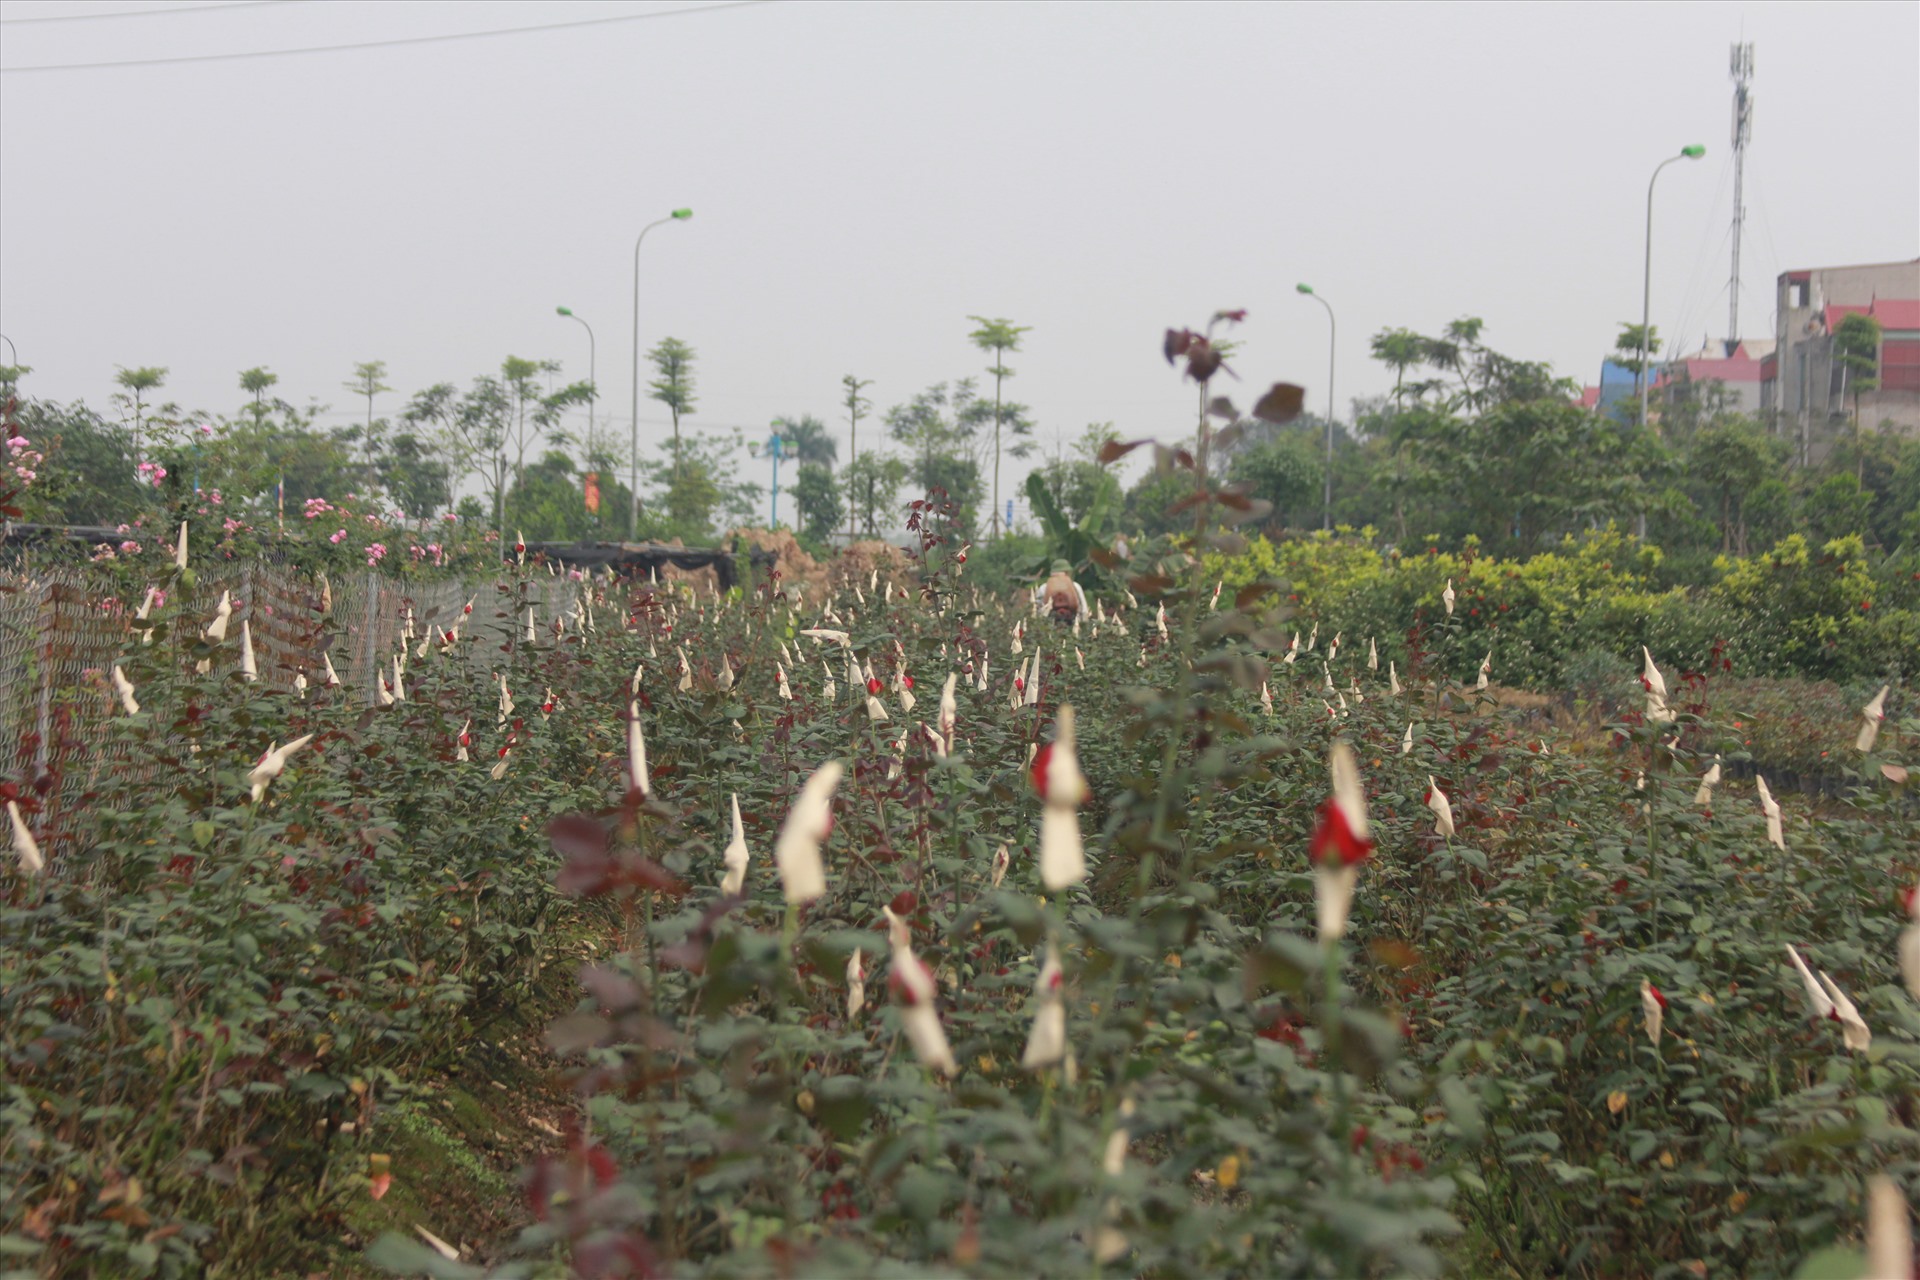 Tương tự, tại xã Mê Linh (huyện Mê Linh) nhiều vườn hoa cũng đang đến kỳ thu hoạch nhưng cũng không thu hoạch được do rớt giá, không có người mua.